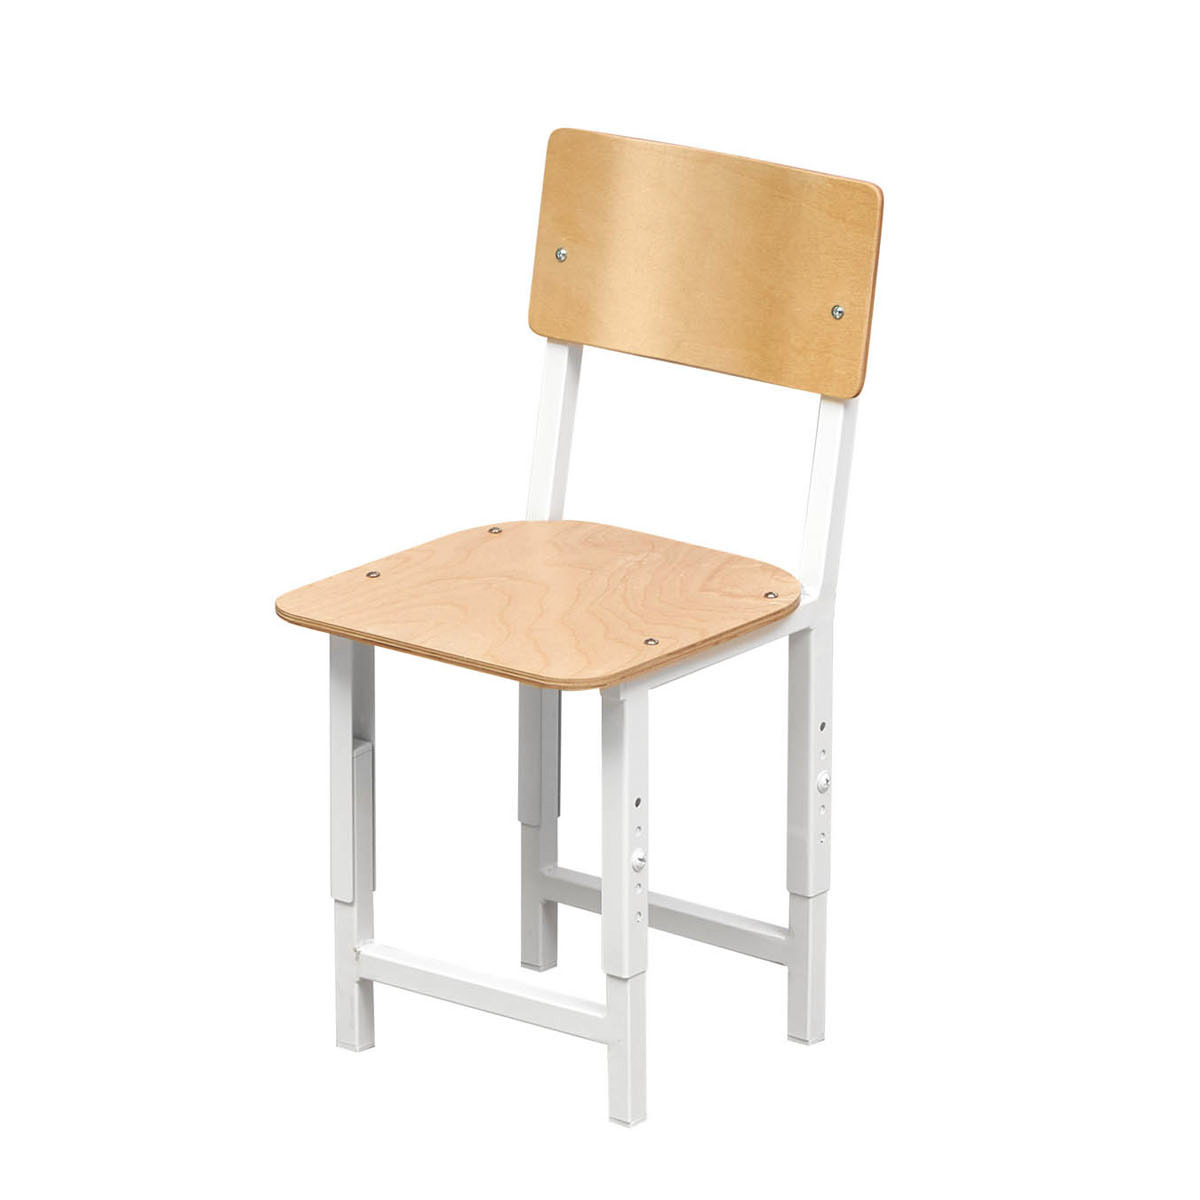 стул для школьника с подставкой